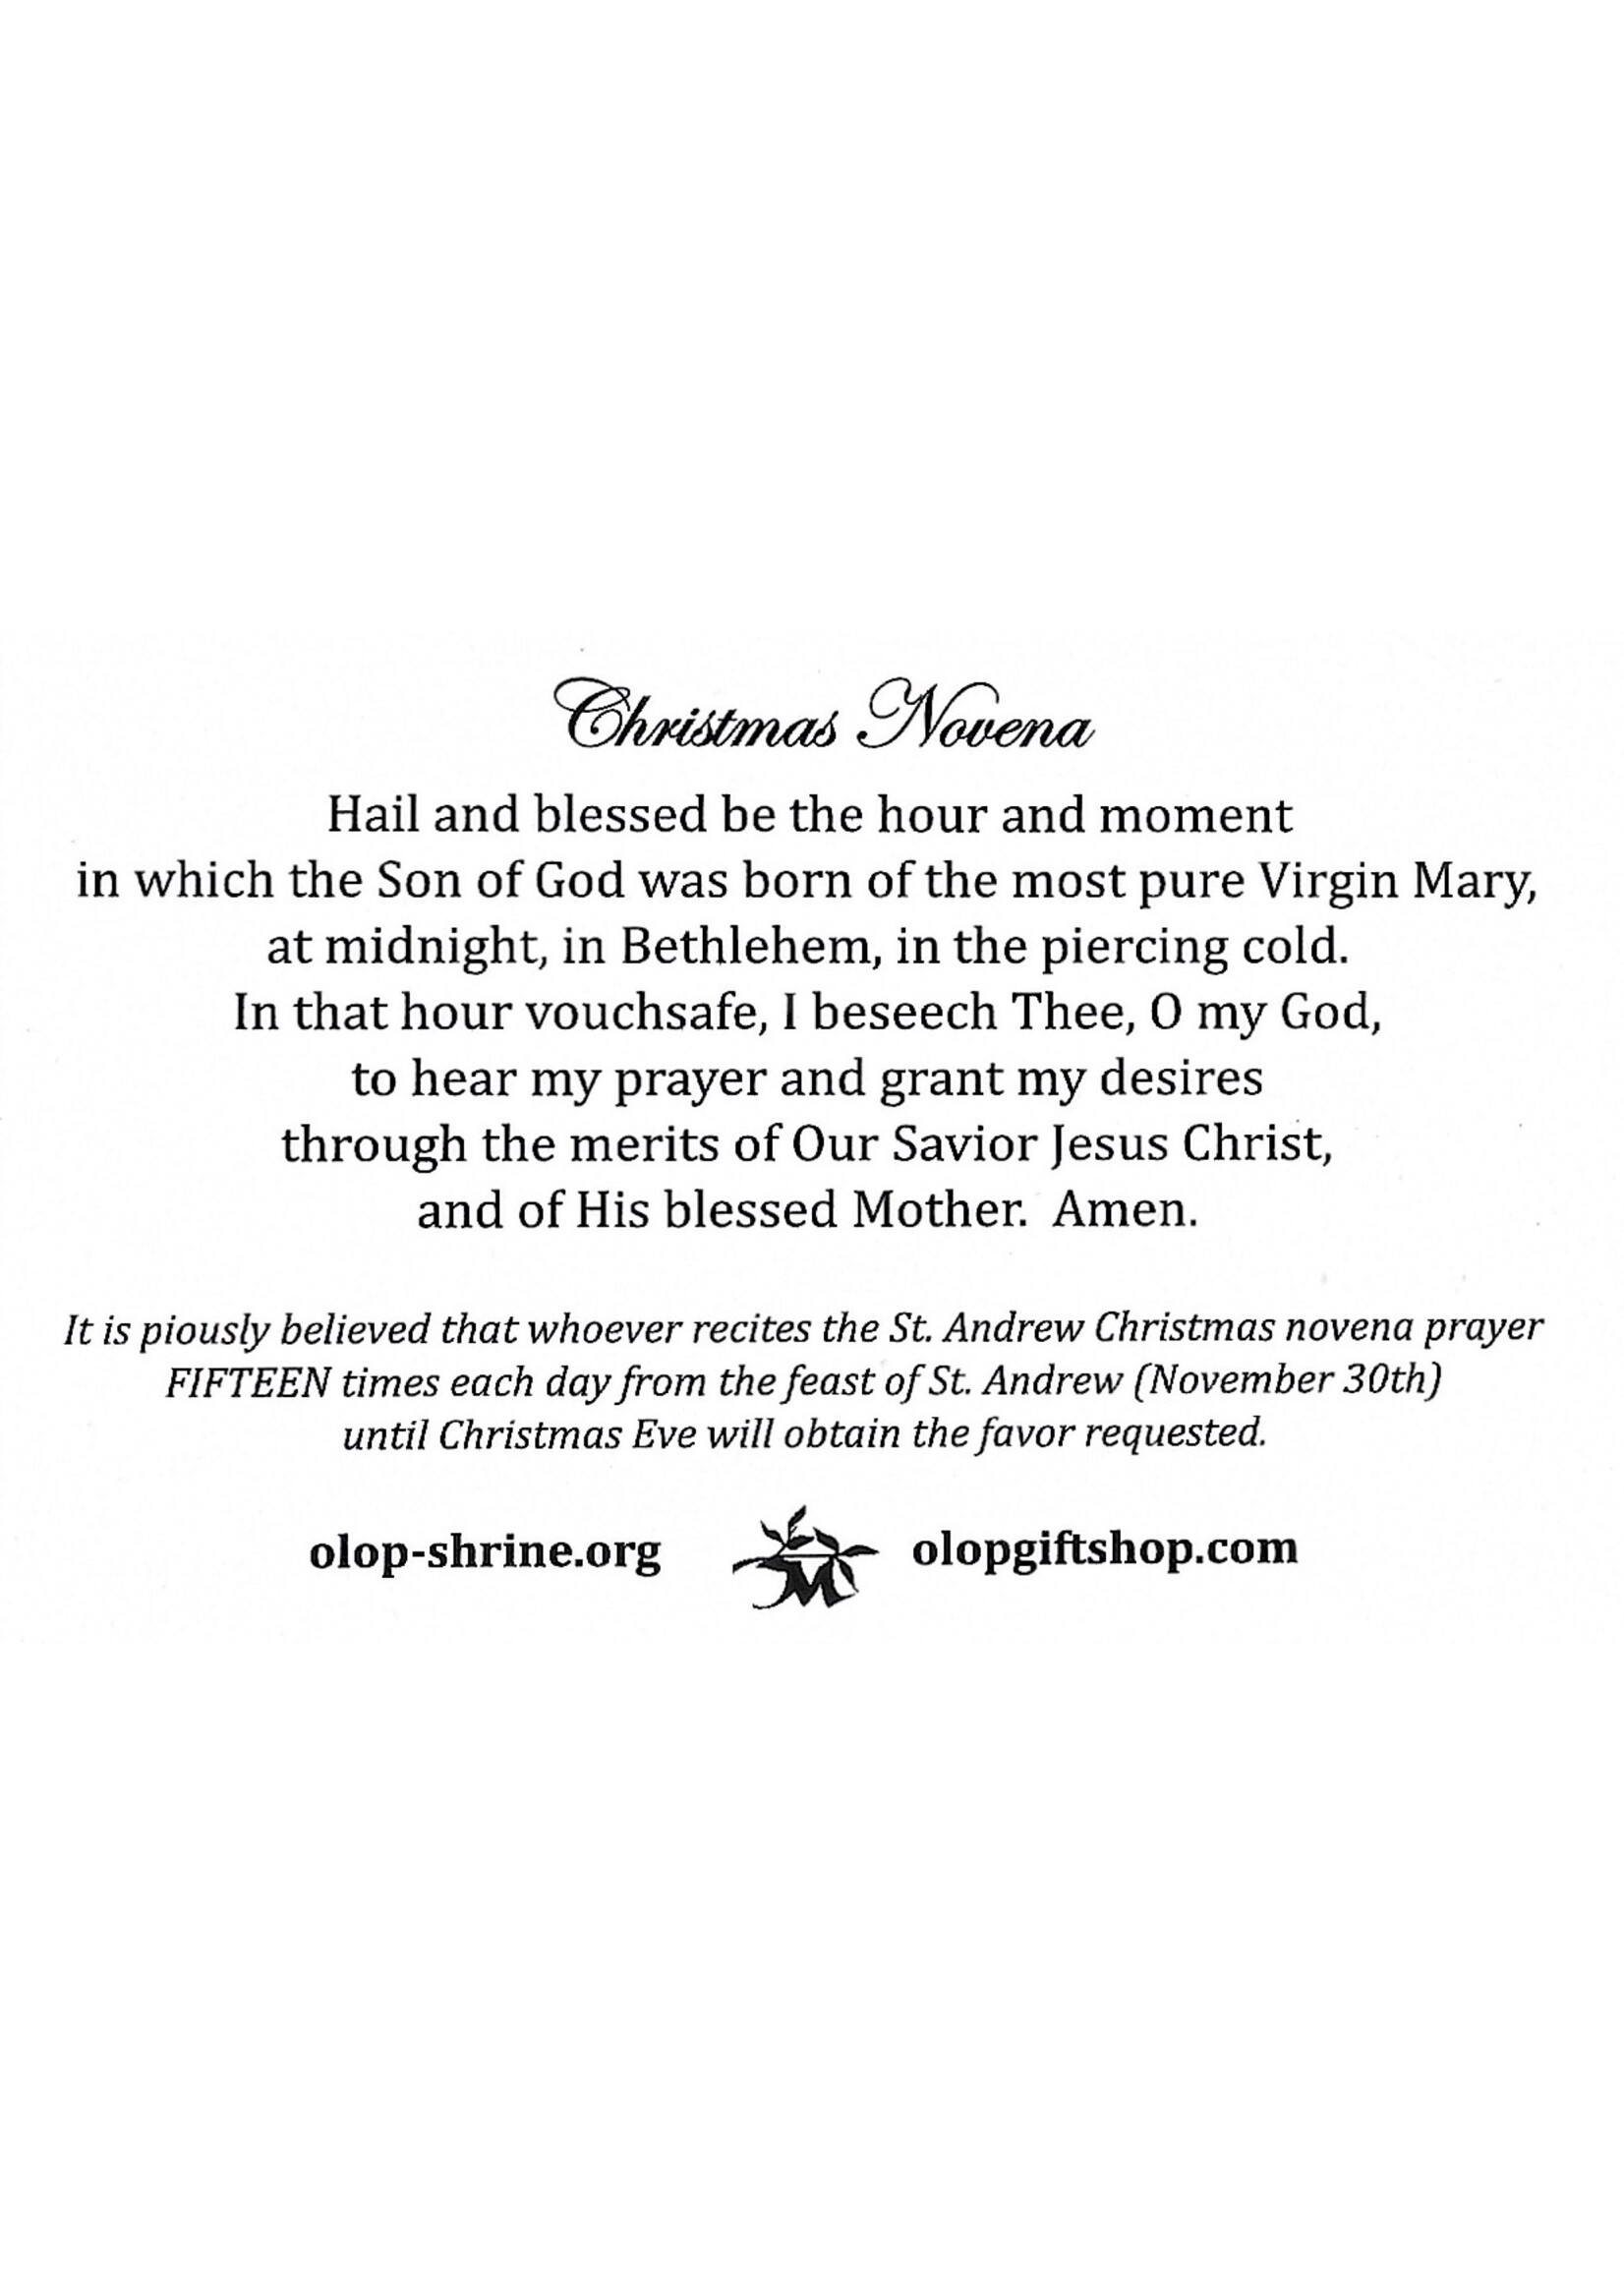 St Andrew Christmas Novena Prayer Card